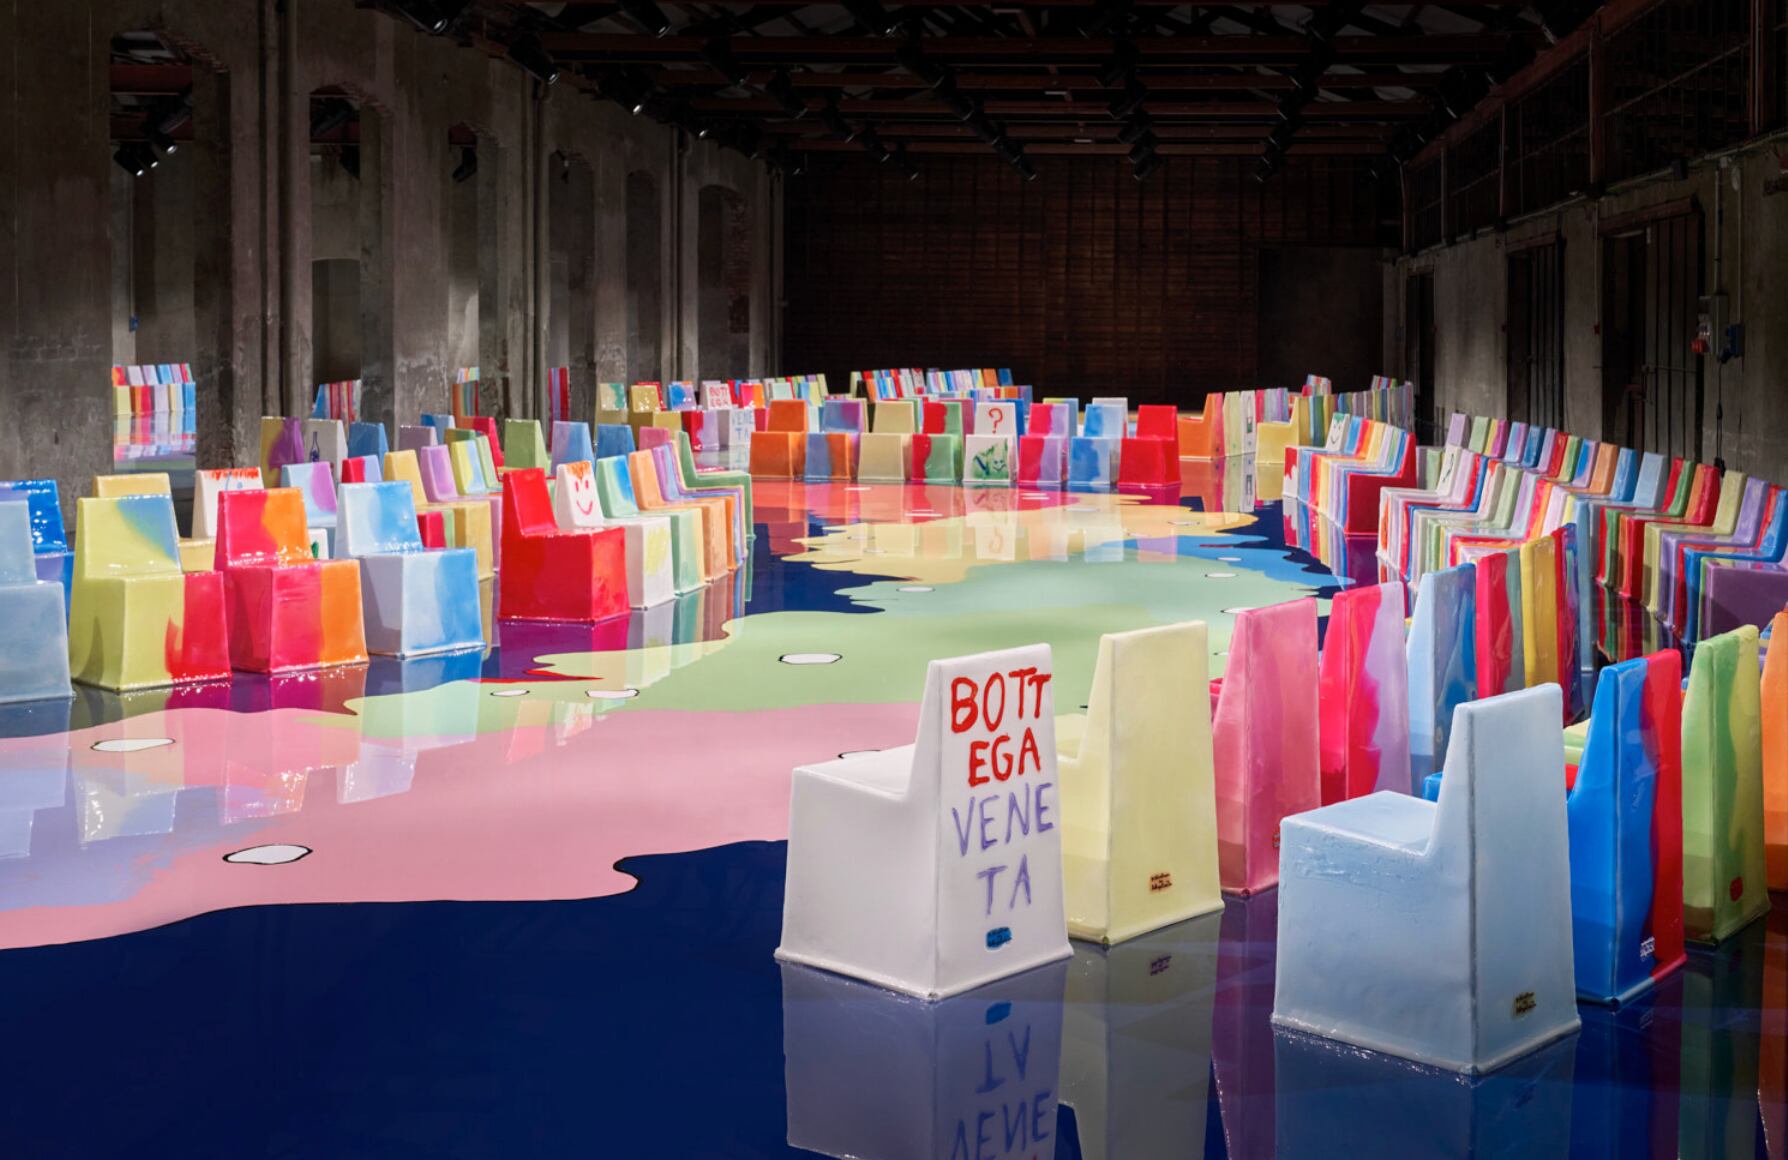 Las coloridas sillas "Come Stai?" de Gaetano Pesce y Matthieu Blazy para Bottega Veneta, expuestas en Design Miami 2022